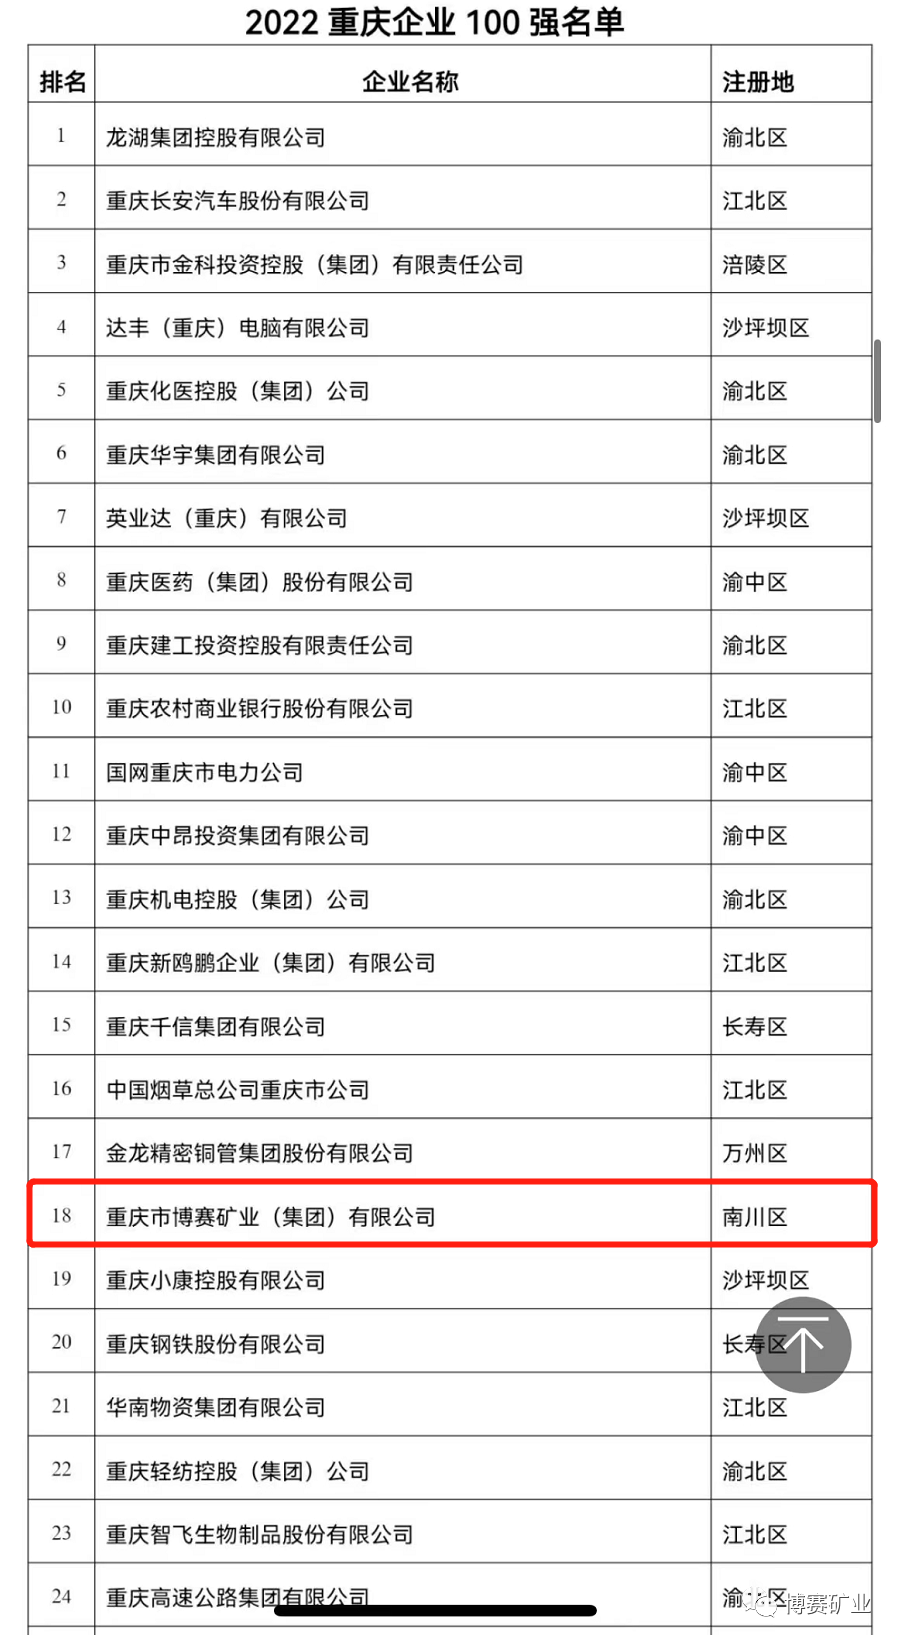 2022重慶民營企業100強榜單出爐，博賽集團繼續位列重慶制造業民營企業100強第1名